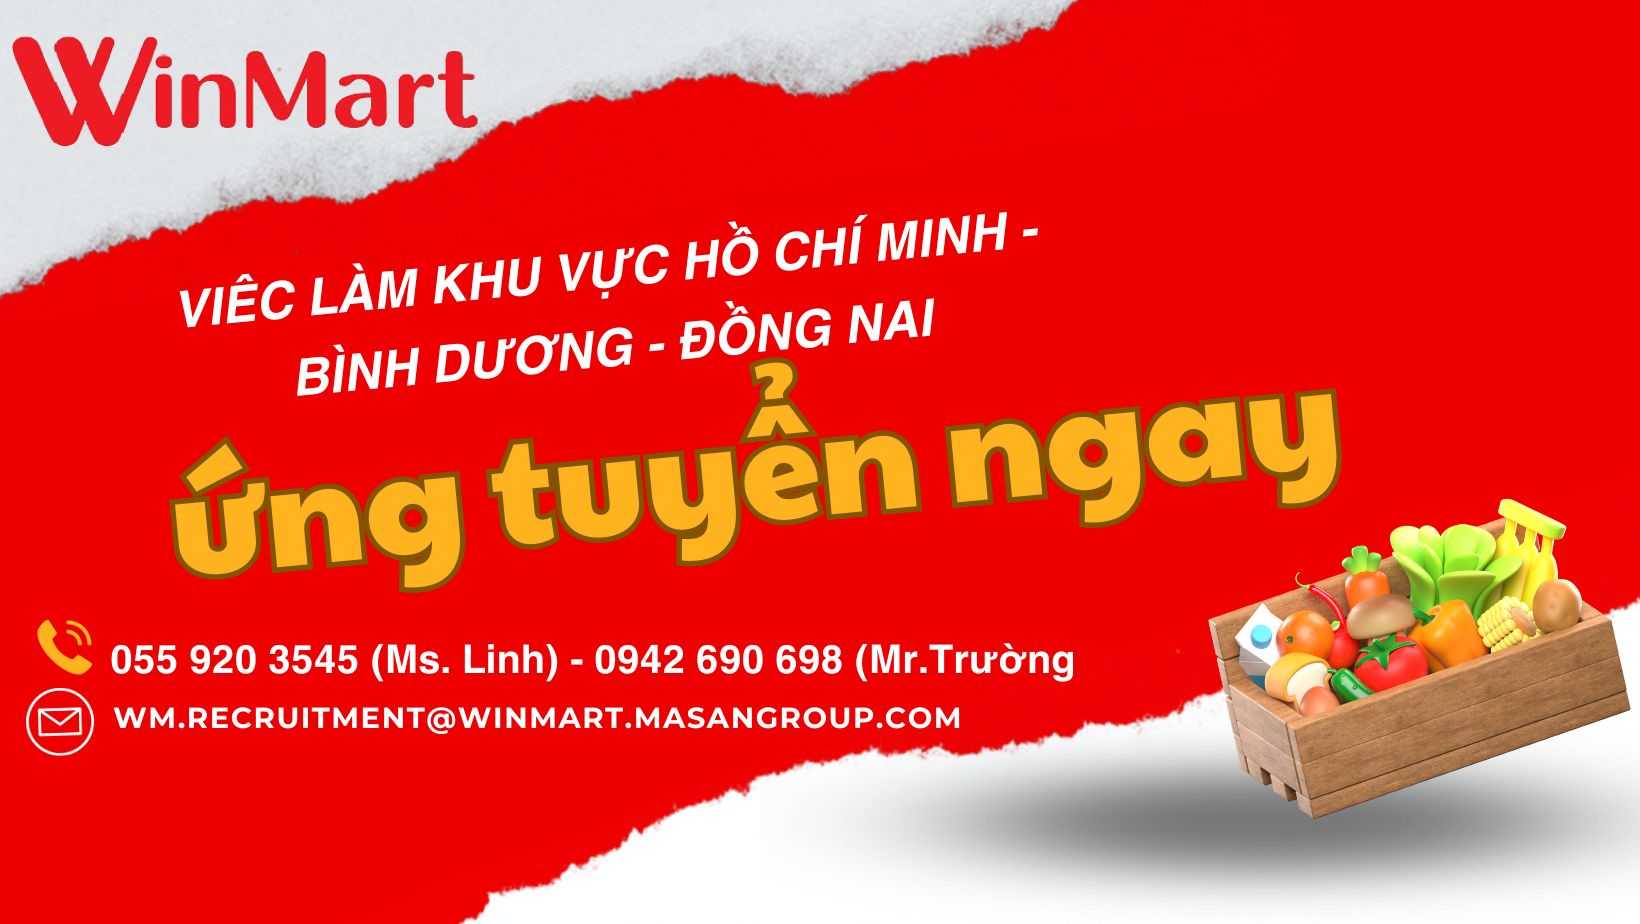 [WinMart] Tuyển dụng các vị trí Nhân viên (Hồ Chí Minh - Bình Dương - Đồng Nai)